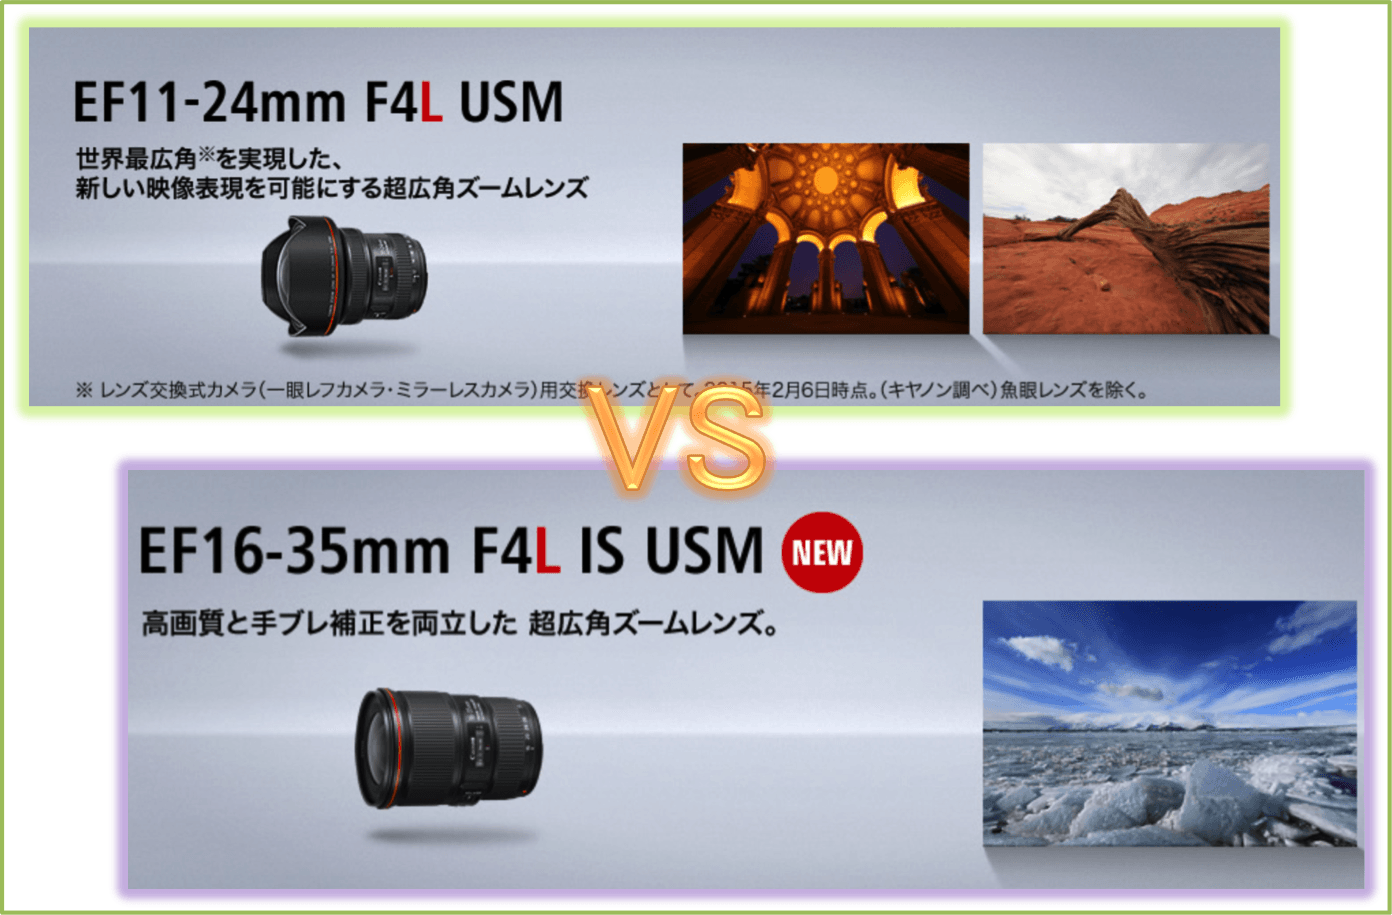 EF11-24mm F4L USM vs EF16-35mm F4L IS USM。両レンズ購入前の1つの検討ポイント